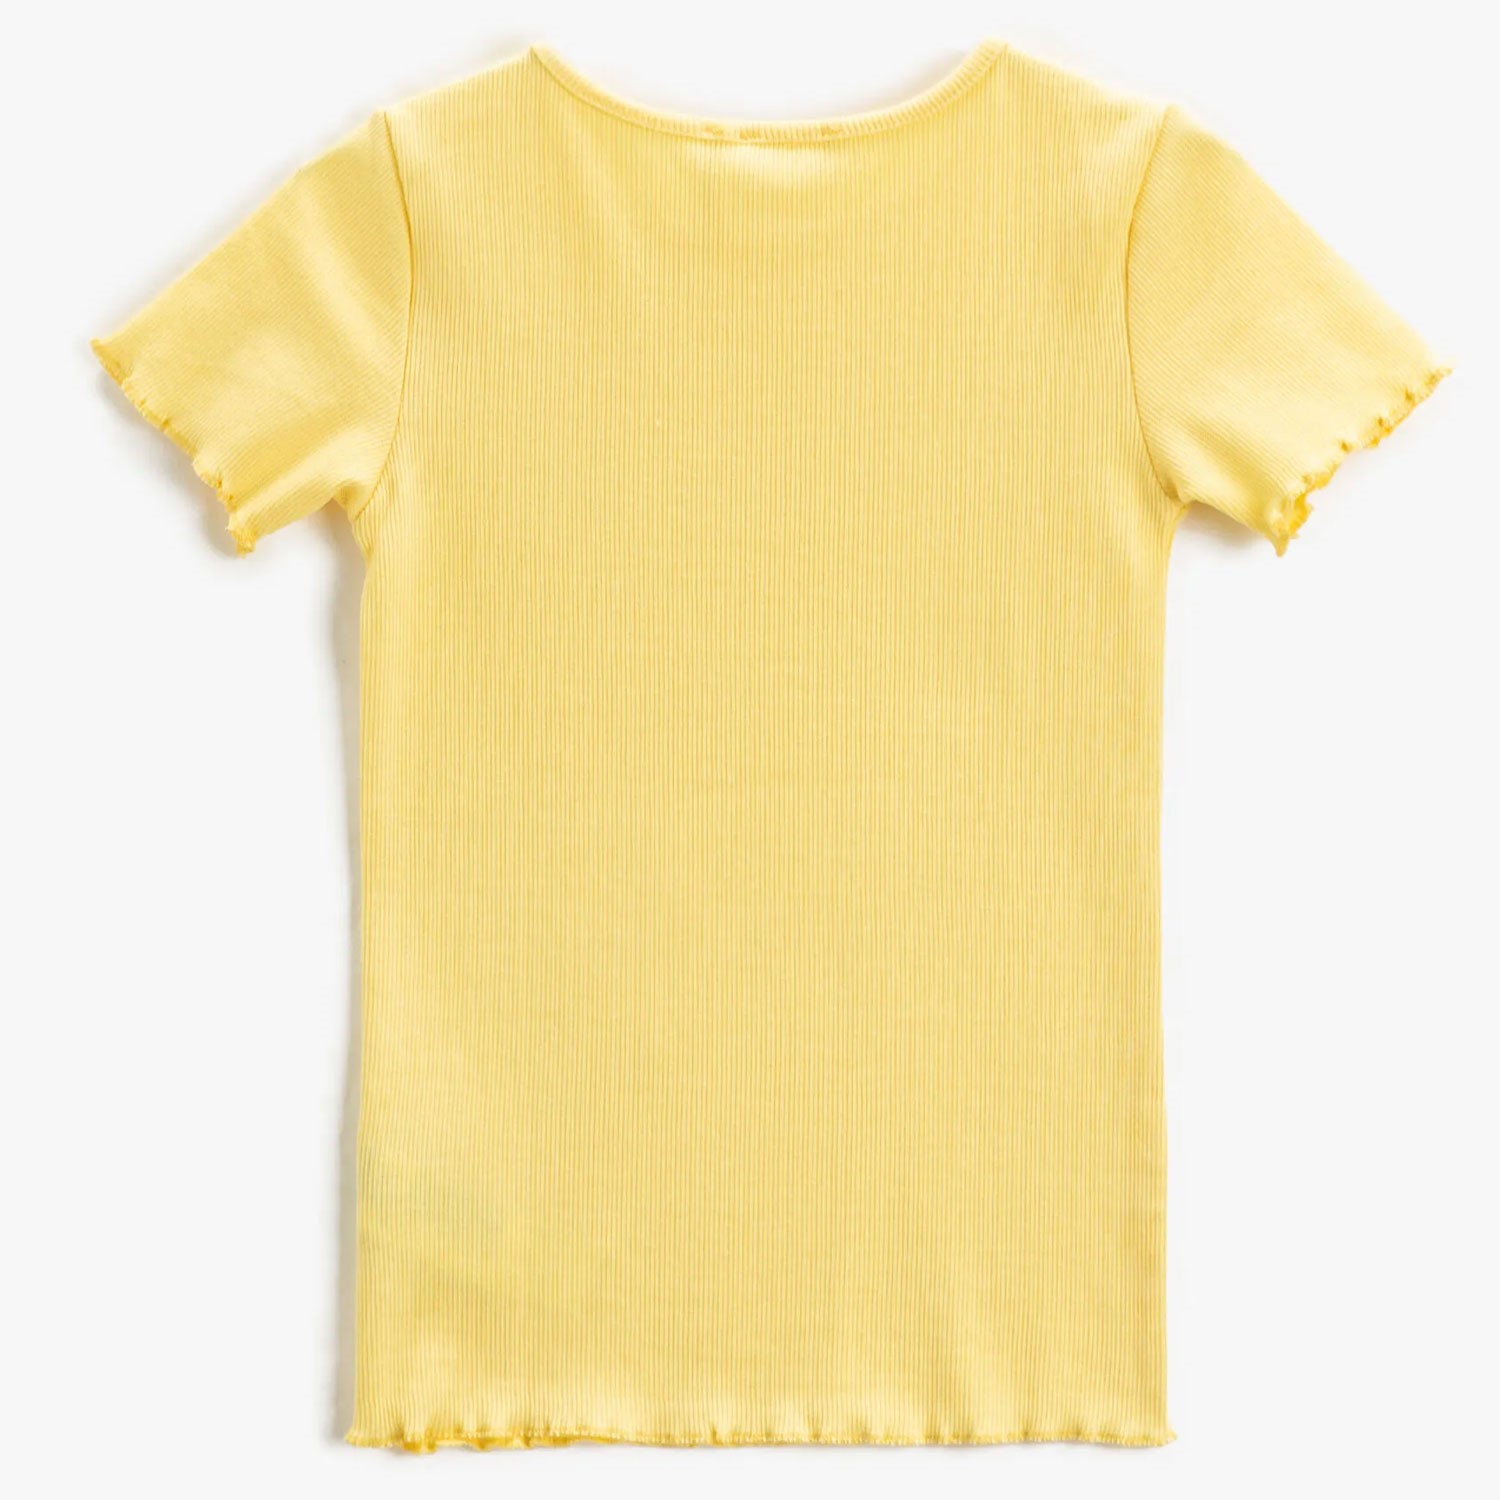 Koton Kids Düz Tshirt Sarı